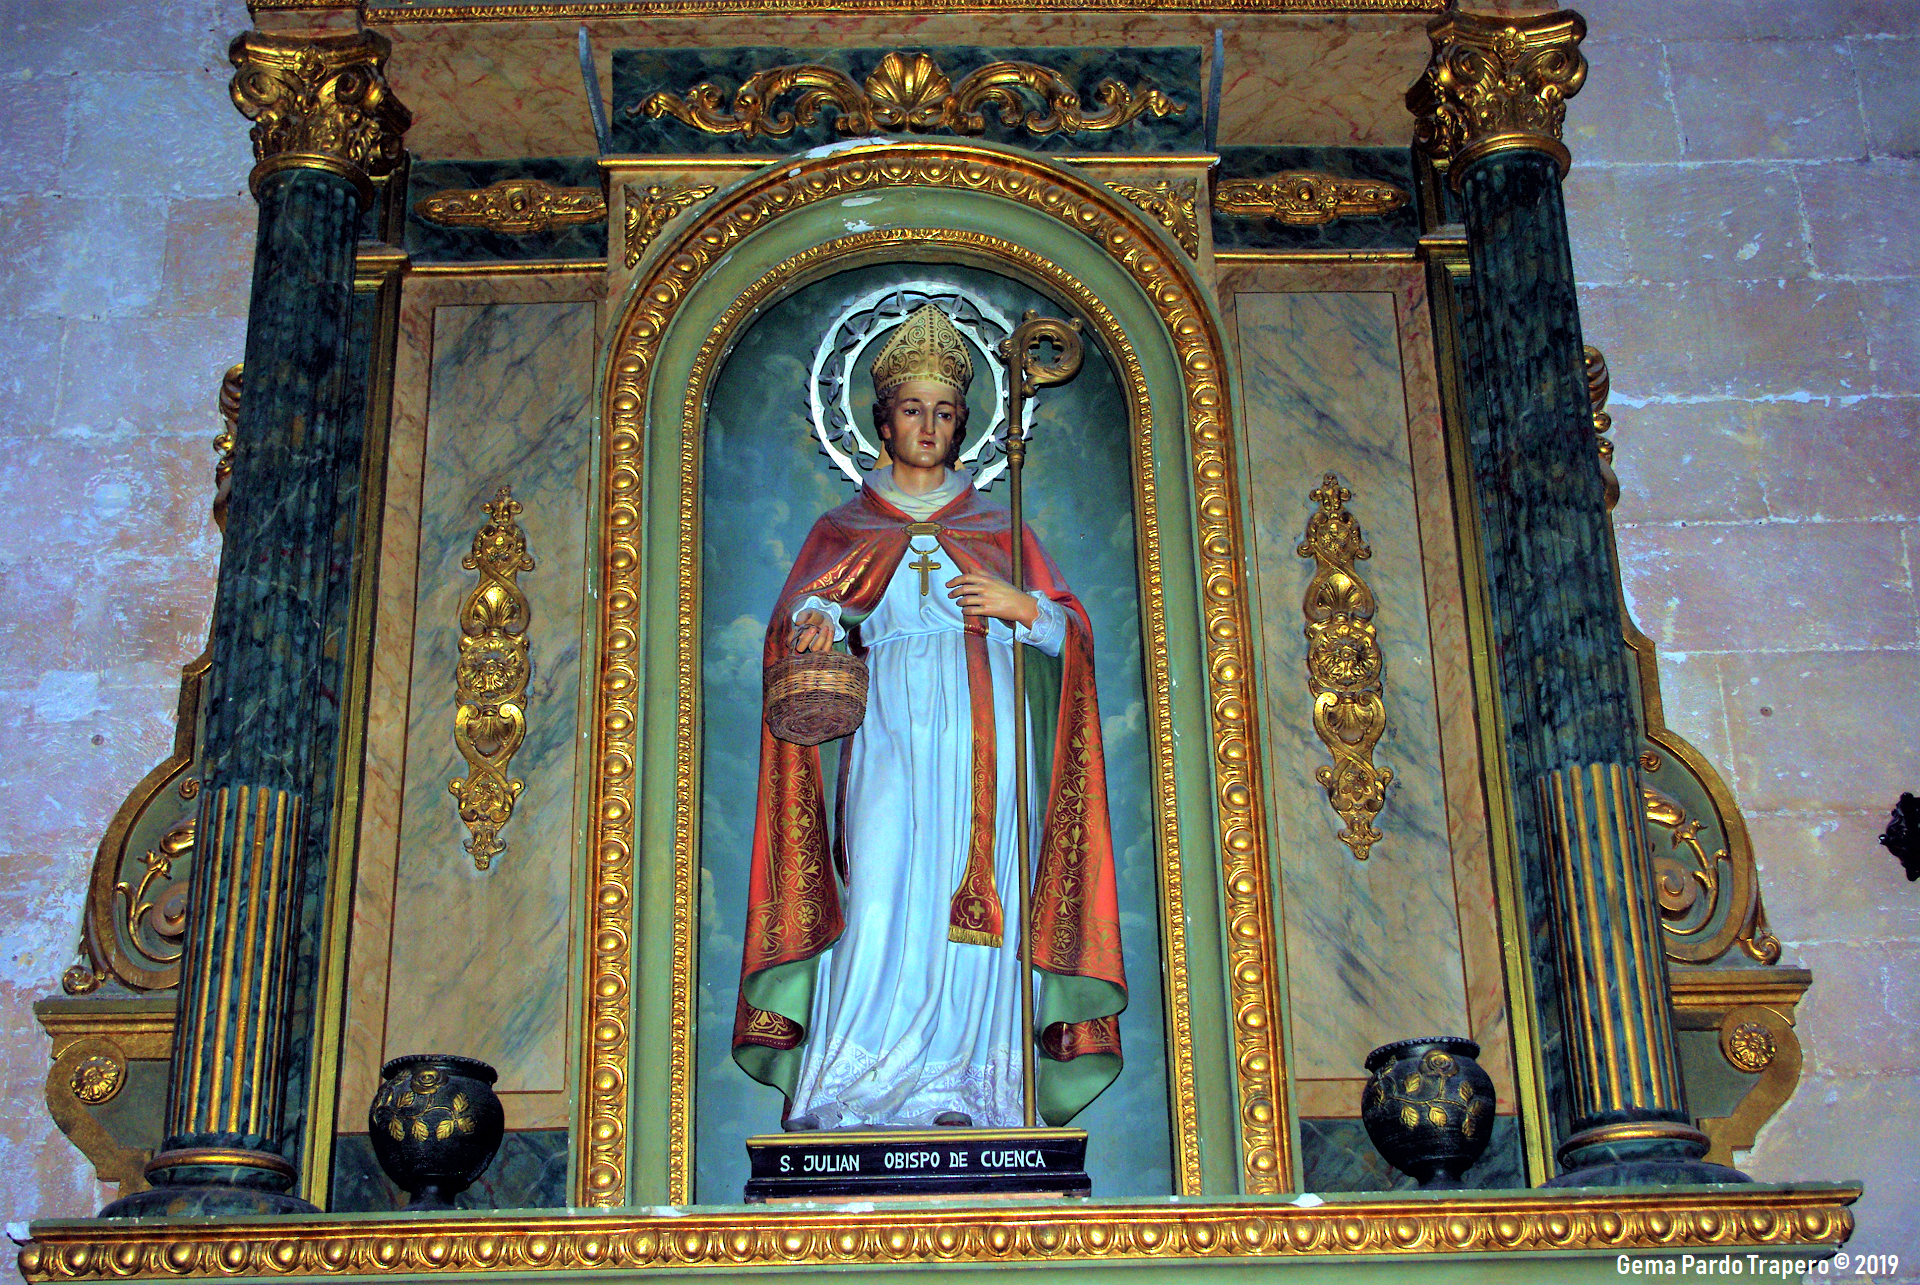 San Julián, Bishop of Cuenca by Faraway